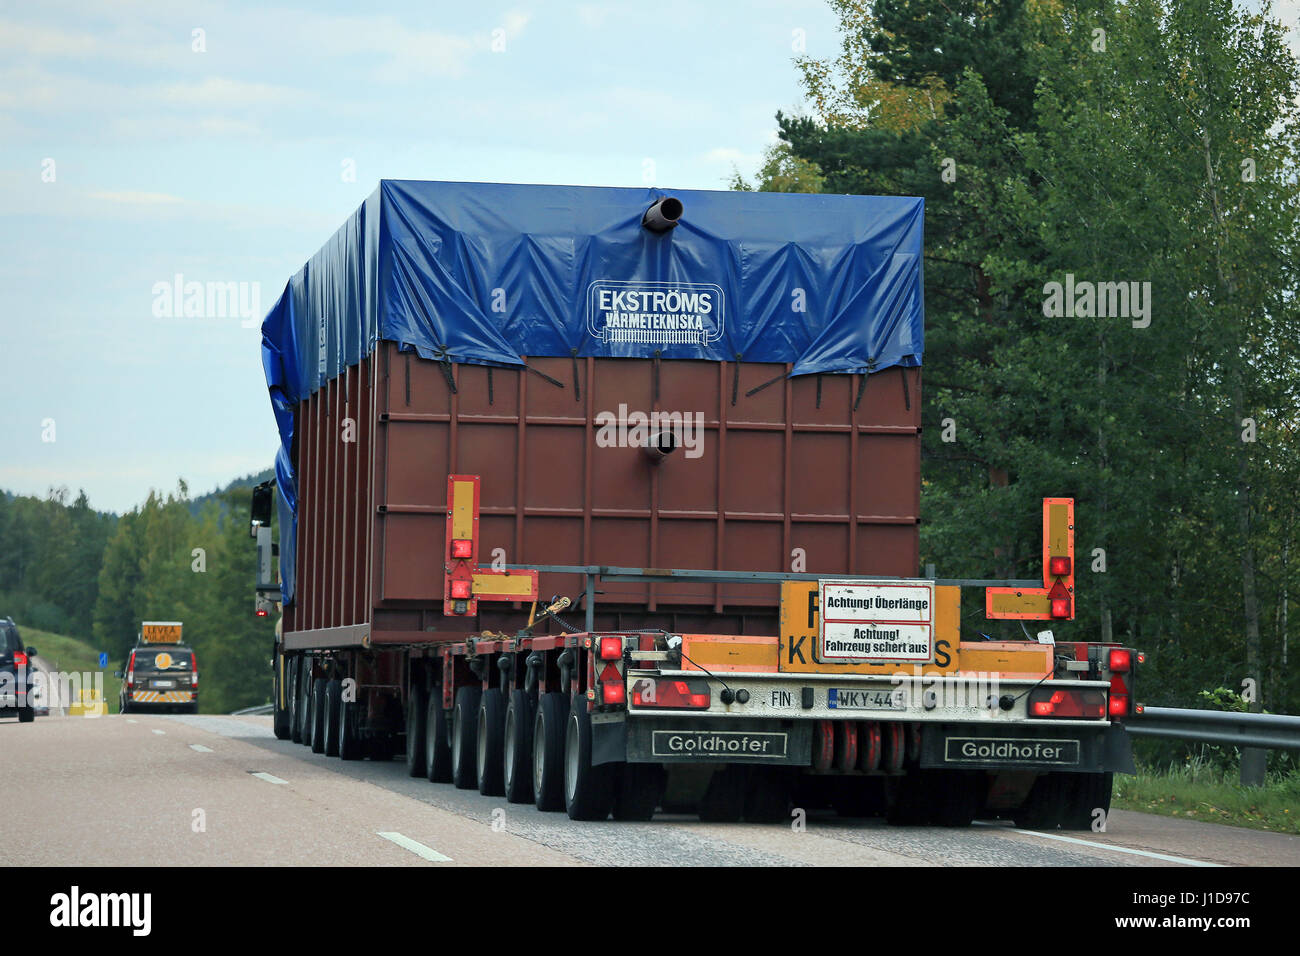 Mikkeli, Finlande - septembre 1, 2016 : camion de transport de charge surdimensionnée avec deux voitures pilotes en tête, vue arrière, vu de la voiture en passant le véhicule Banque D'Images